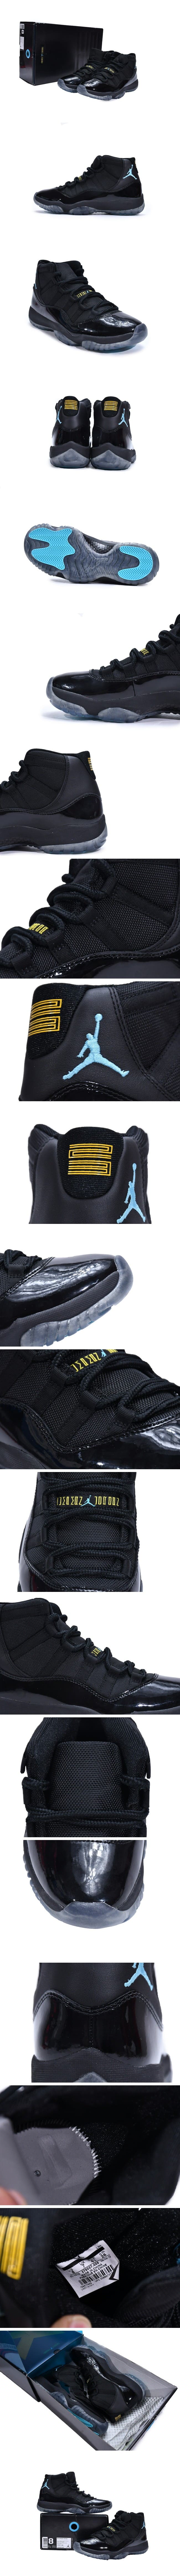 Nike Air Jordan 11 Retro Gamma Blue 378037-006 ナイキ エアジョーダン11 レトロ 